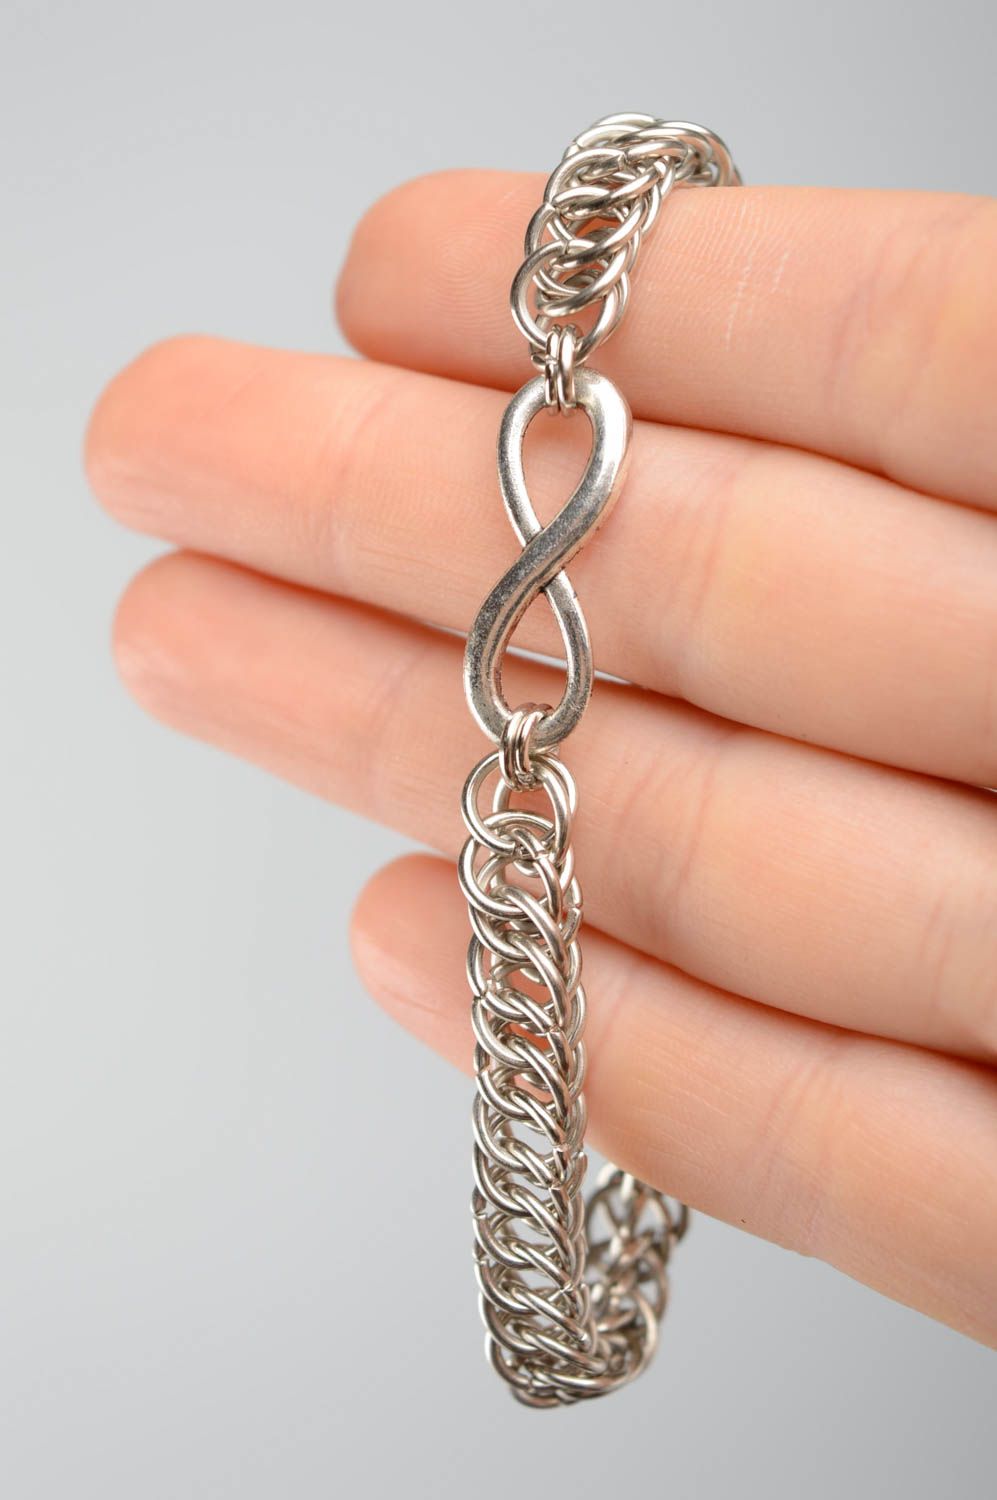 Наручный браслет из металла в технике кольчужного плетения фото 2